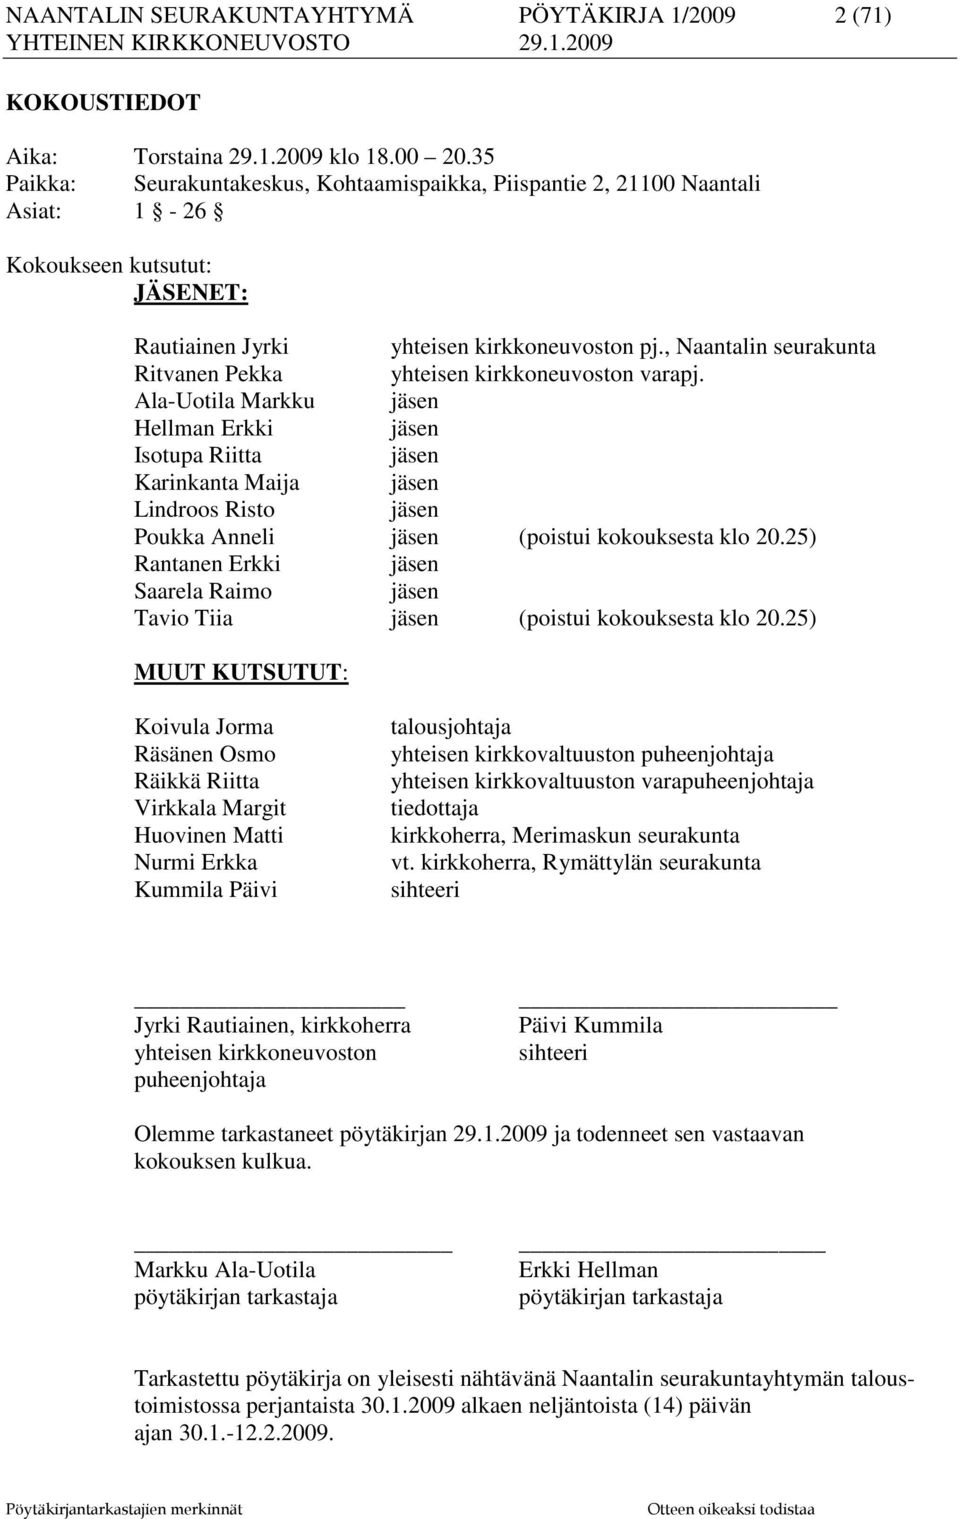 , Naantalin seurakunta Ritvanen Pekka yhteisen kirkkoneuvoston varapj.